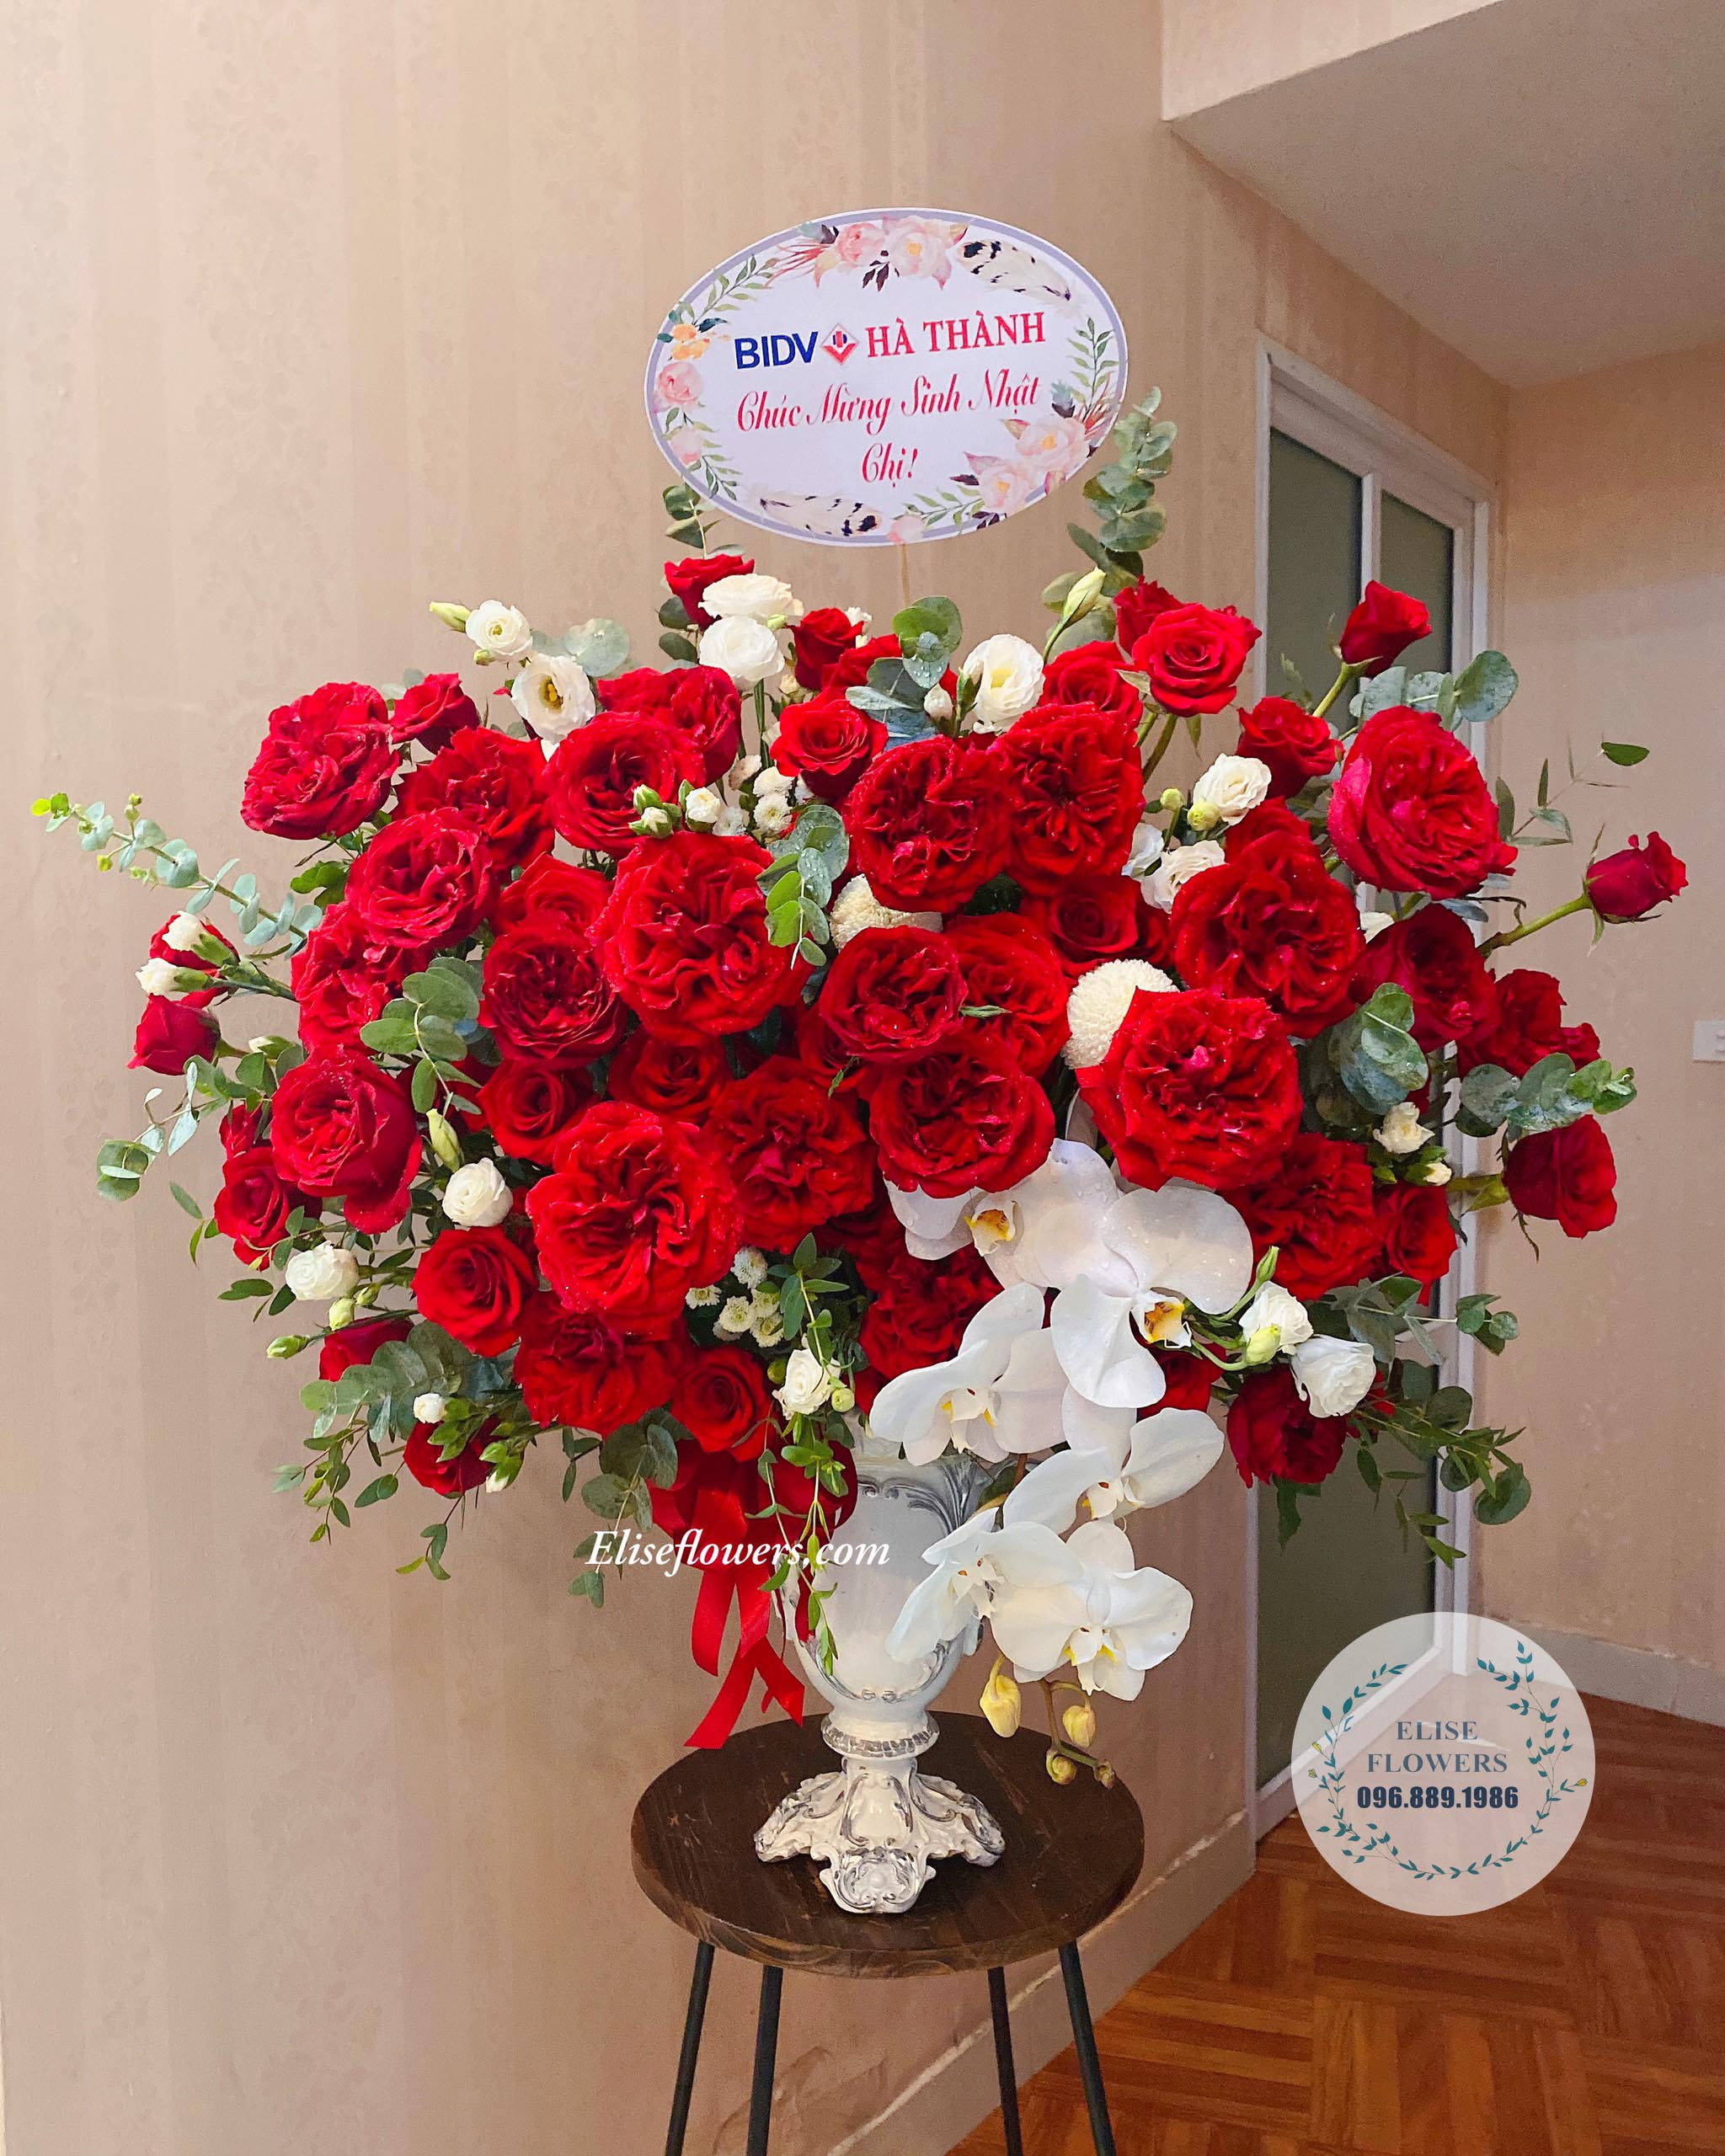 Bình hoa hồng đỏ nhập khẩu sang trọng - Hoa chúc mừng sinh nhật đẹp ở Hà Nội